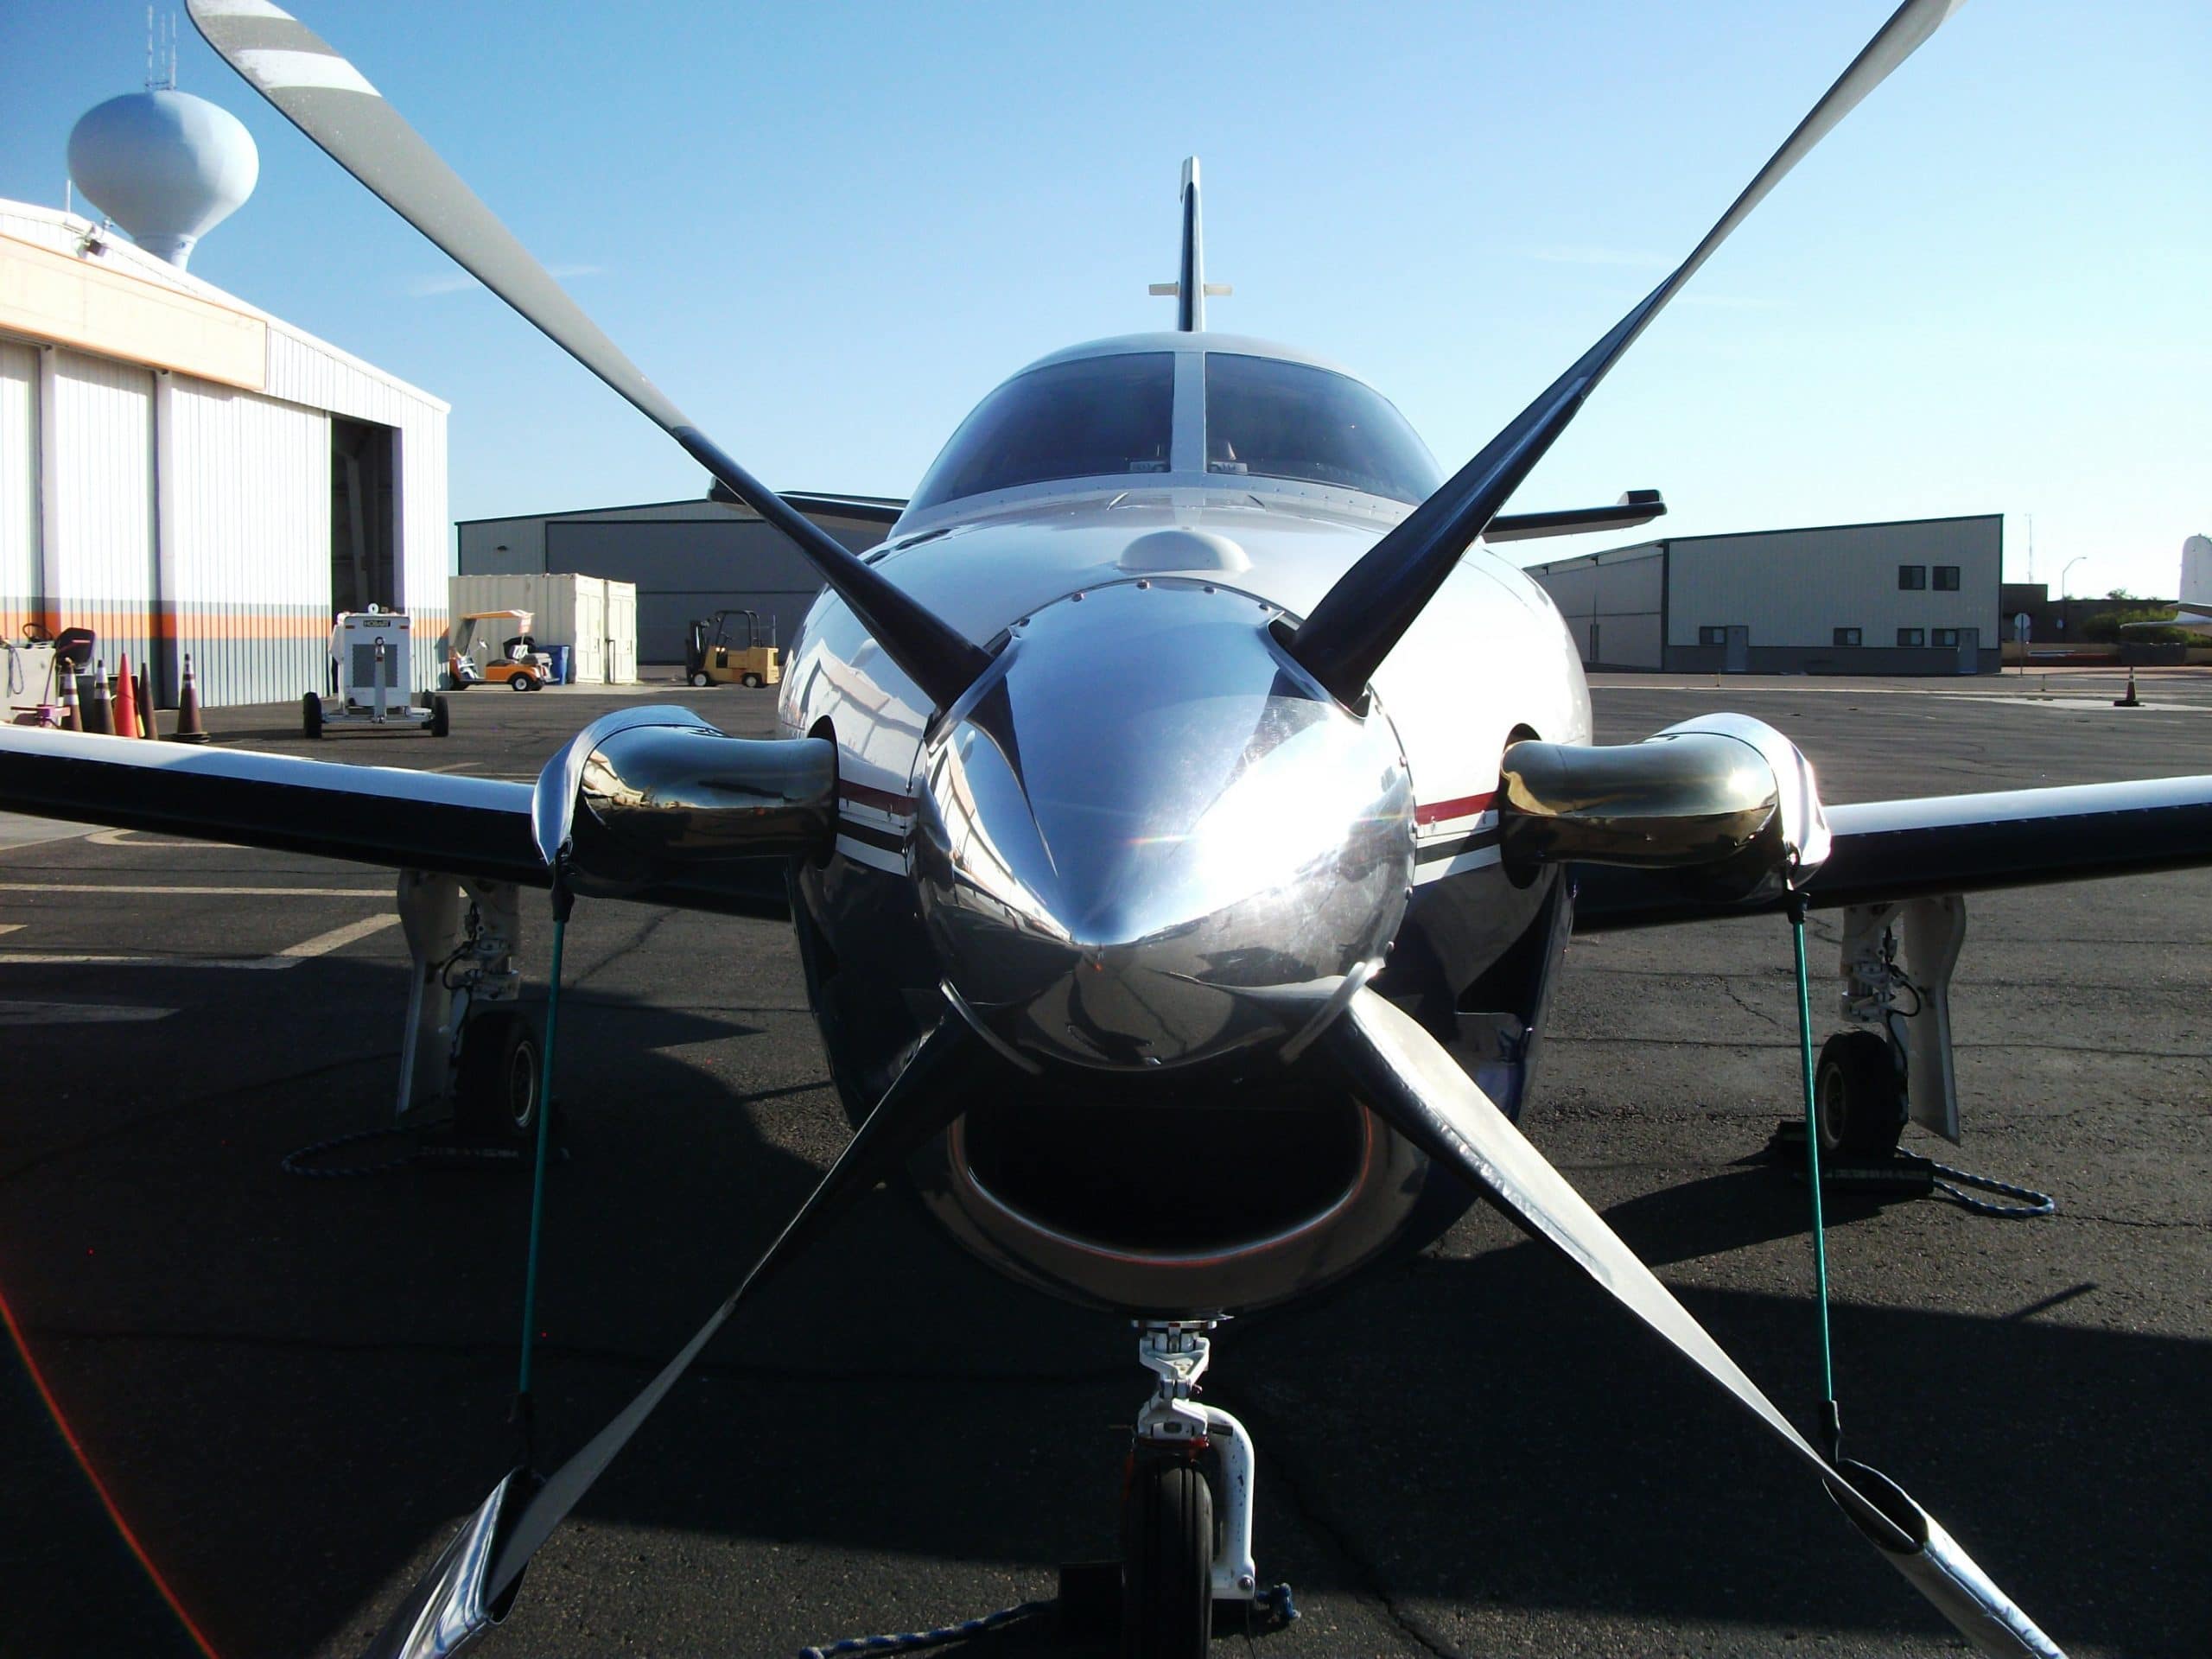 Arizona turbo prop aircraft detailing